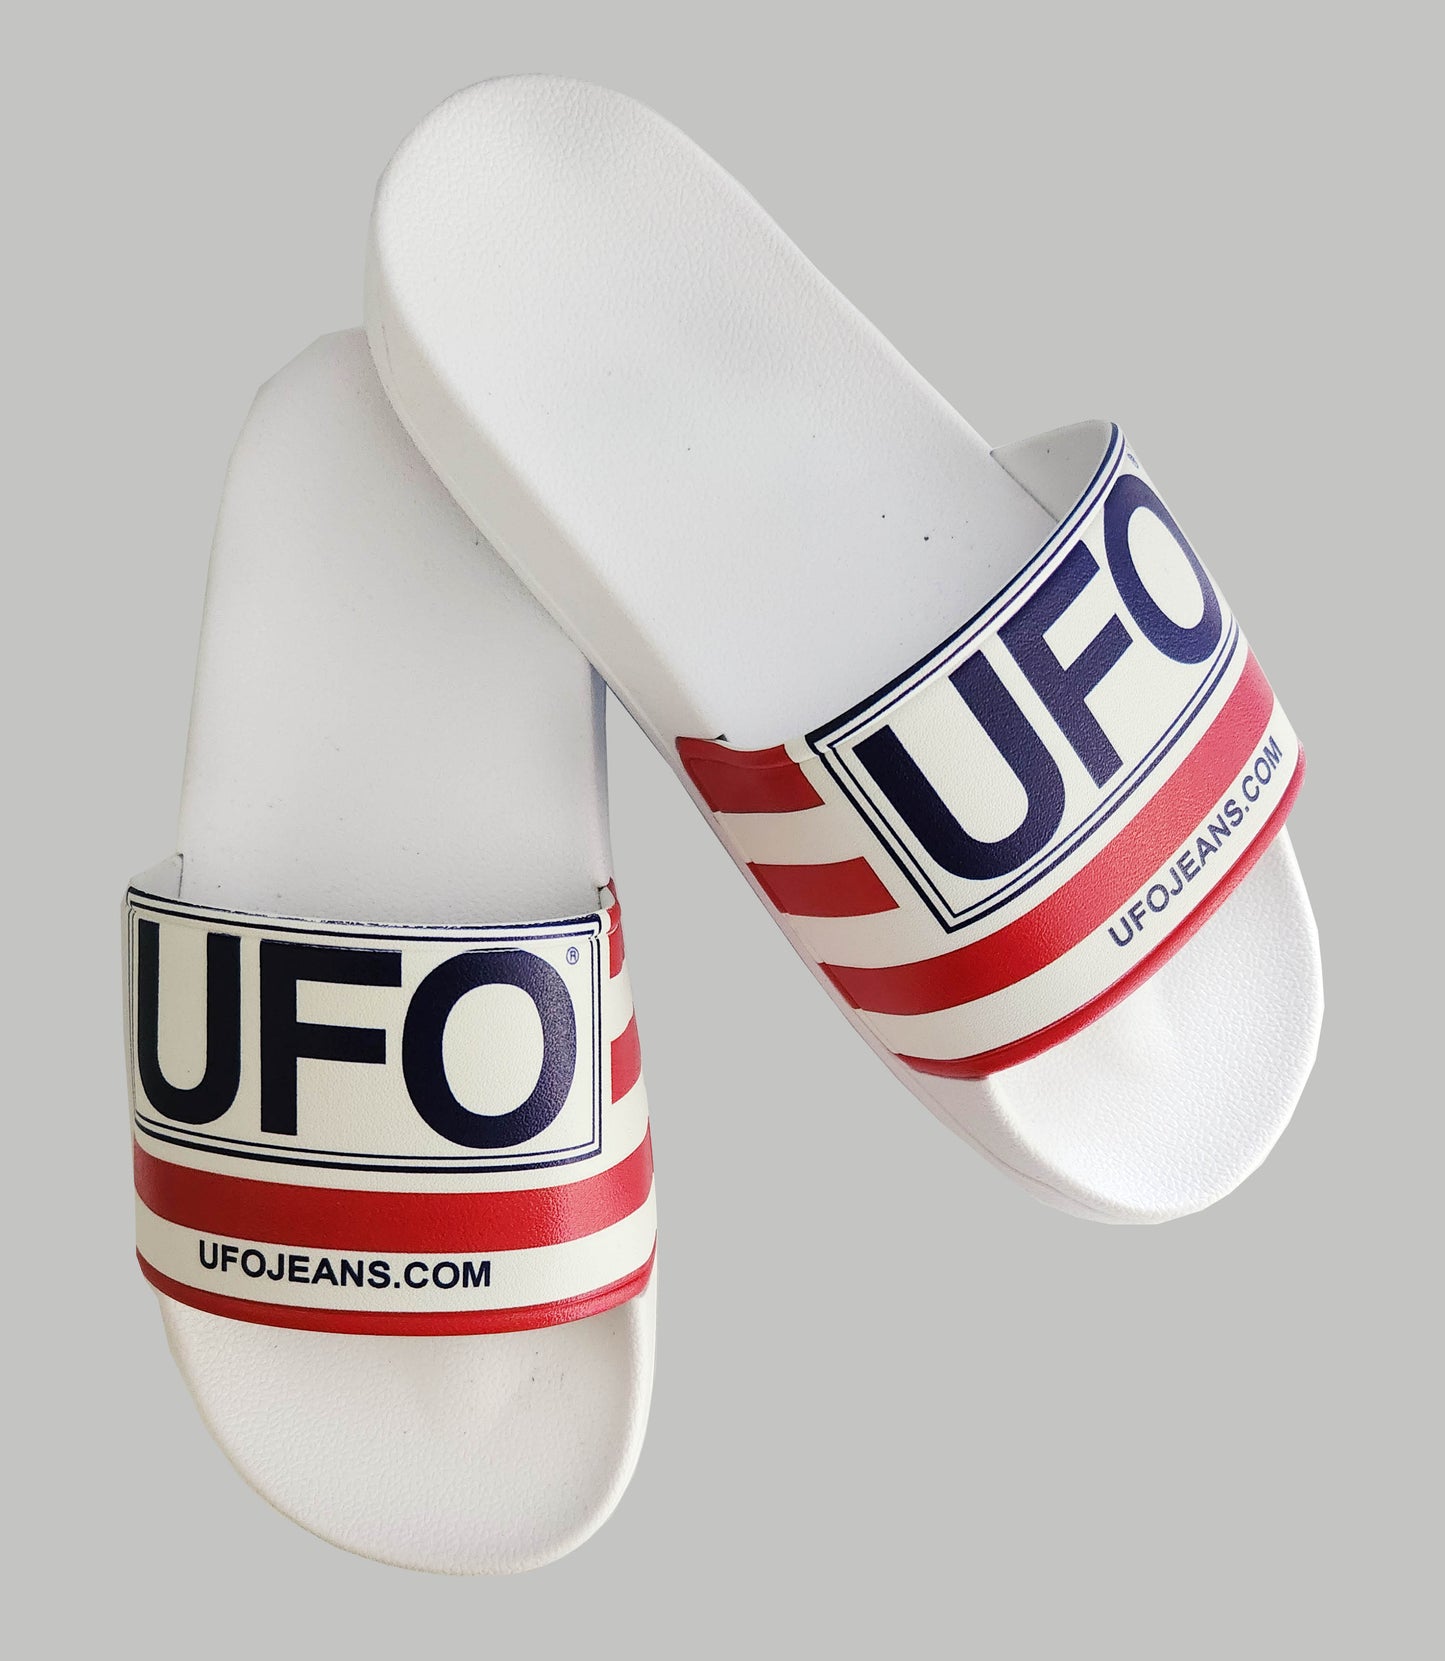 UFO Sliders #50280